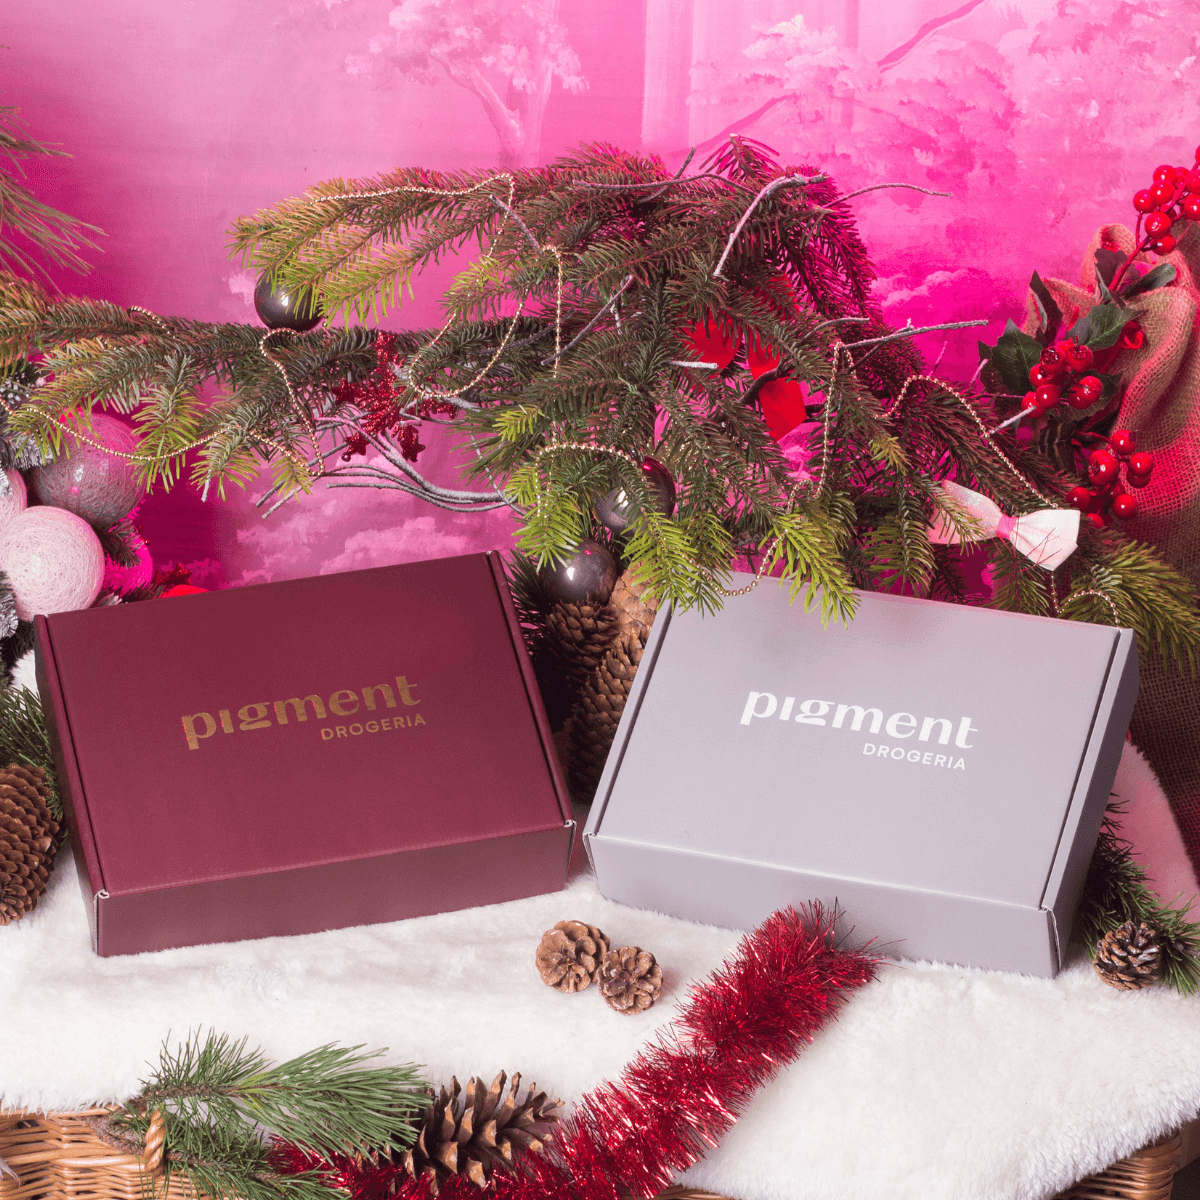 Pigment Box edycja Świąteczna! Sprawdź nasze 2 wyjątkowe pudełka